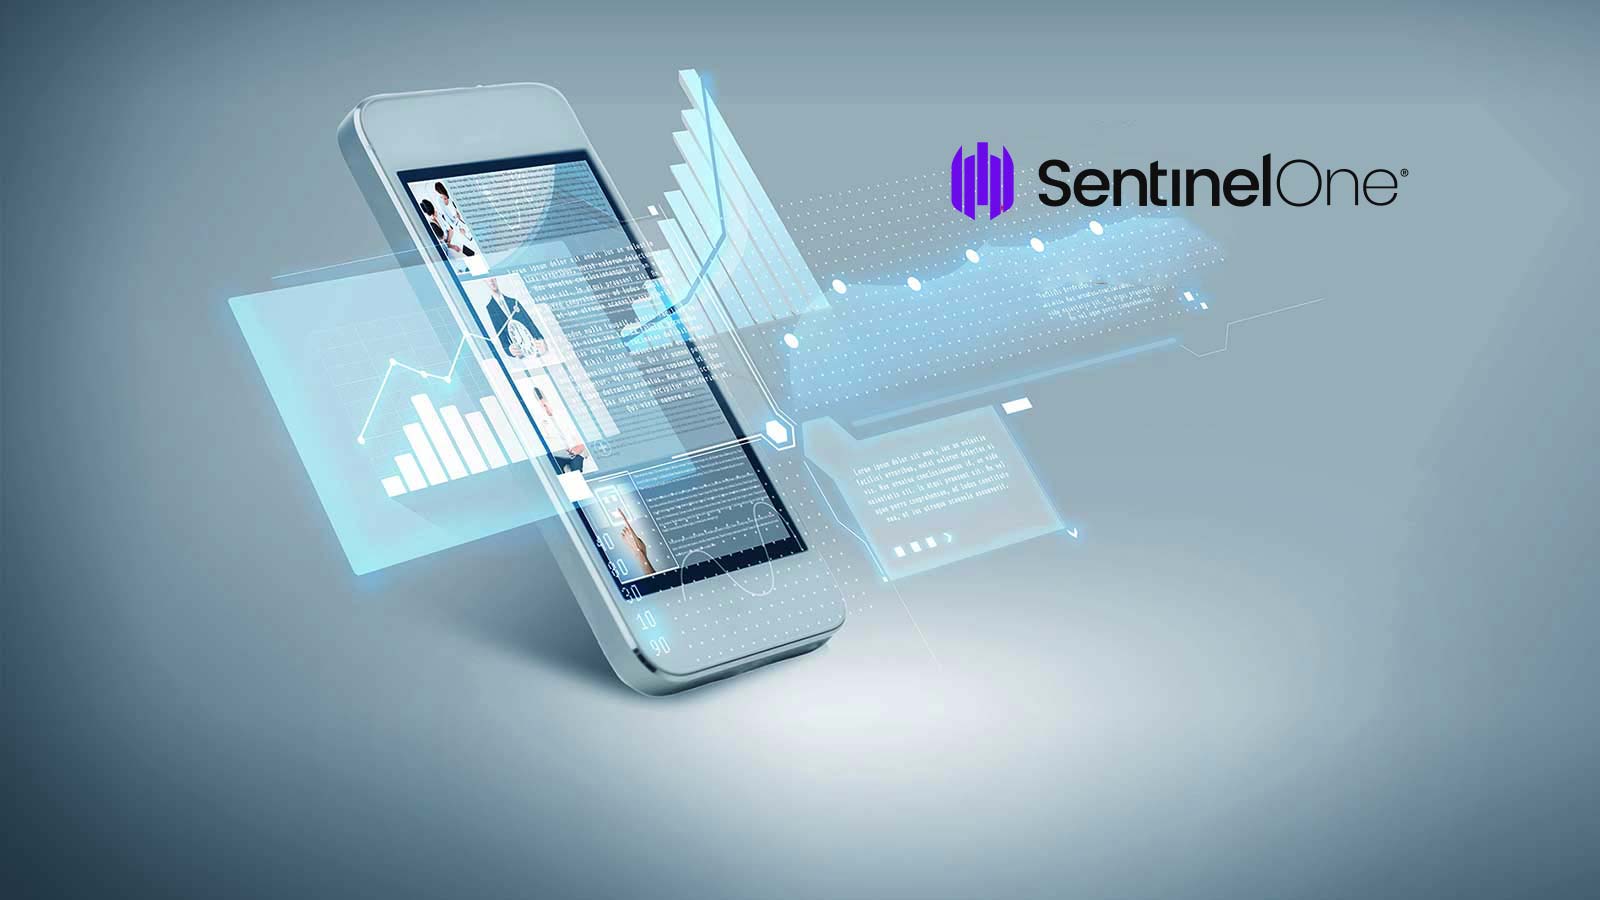 FTI Consulting choisit SentinelOne pour accélérer la réponse aux incidents et renforcer les services de cyber-anticipation de ses clients internationaux